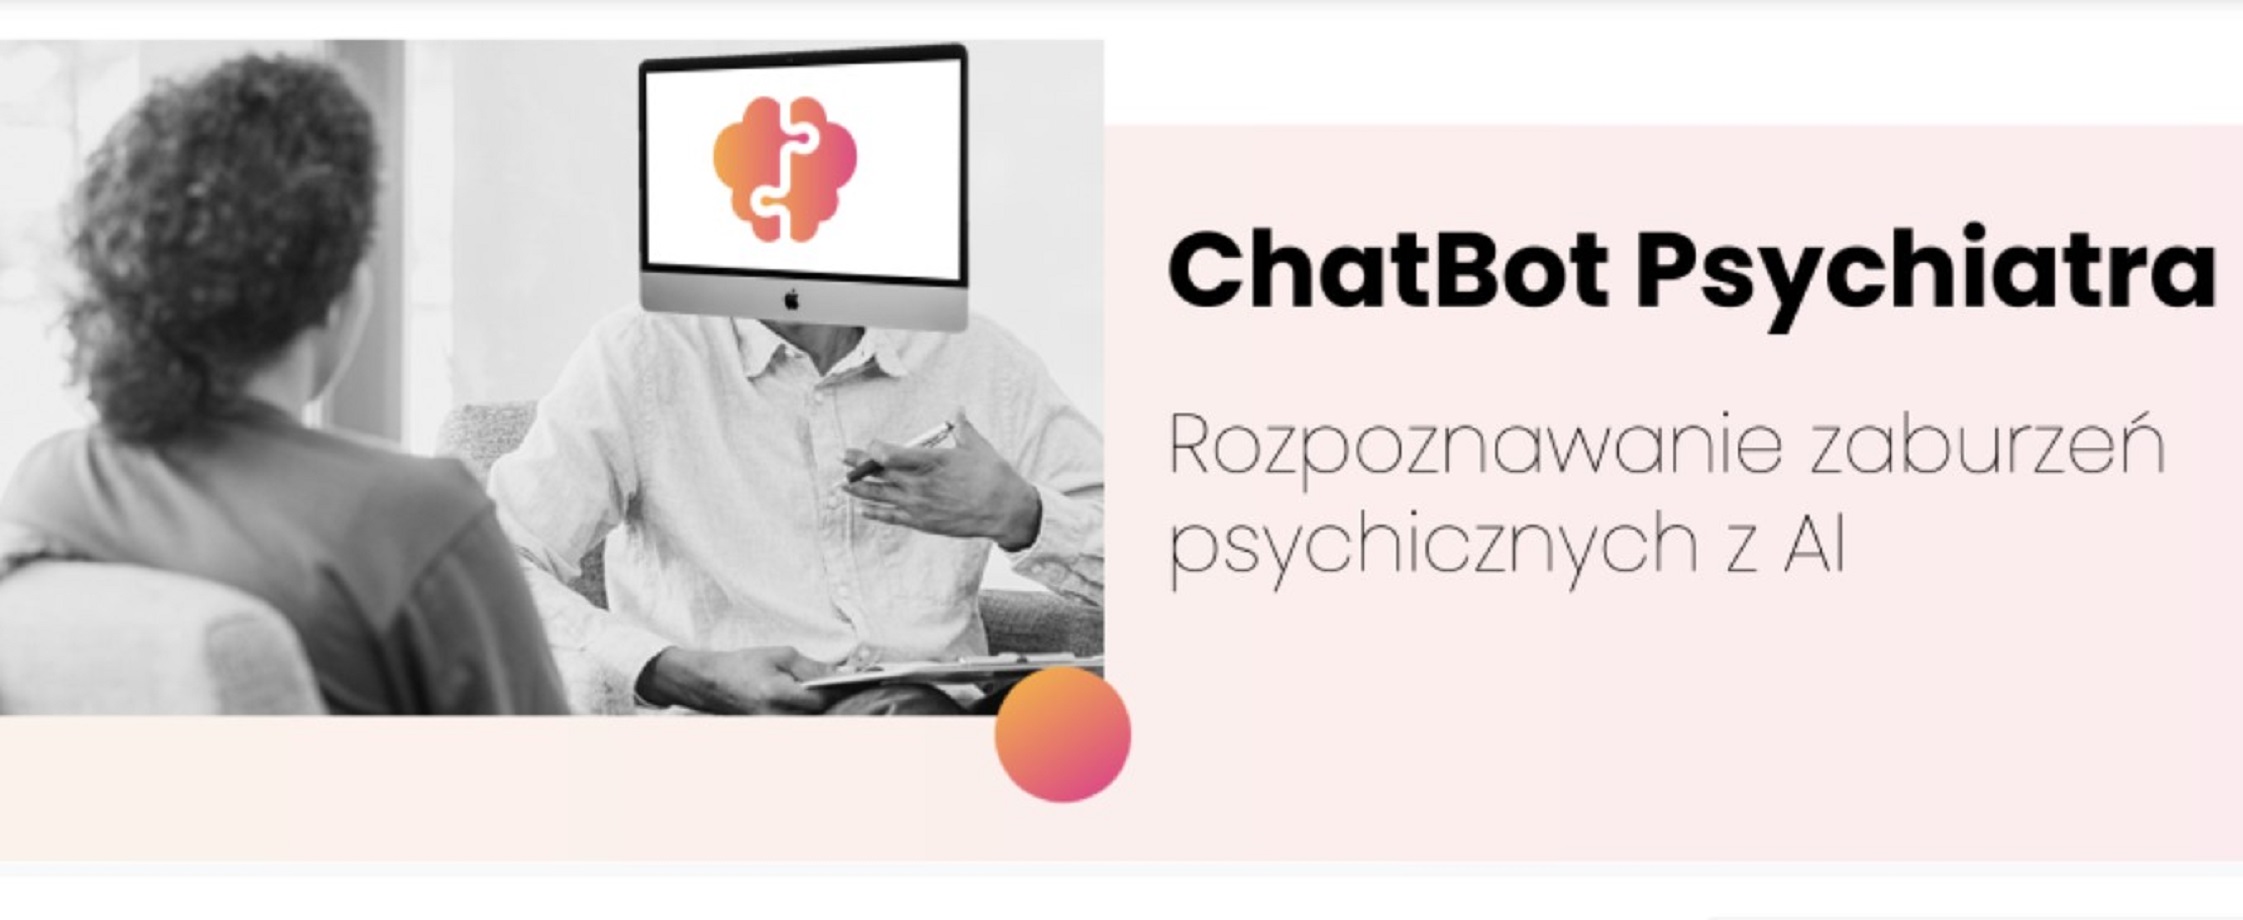 Chatbot-Psychiatra: sztuczna inteligencja wspomagająca diagnozowanie zaburzeń psychicznych